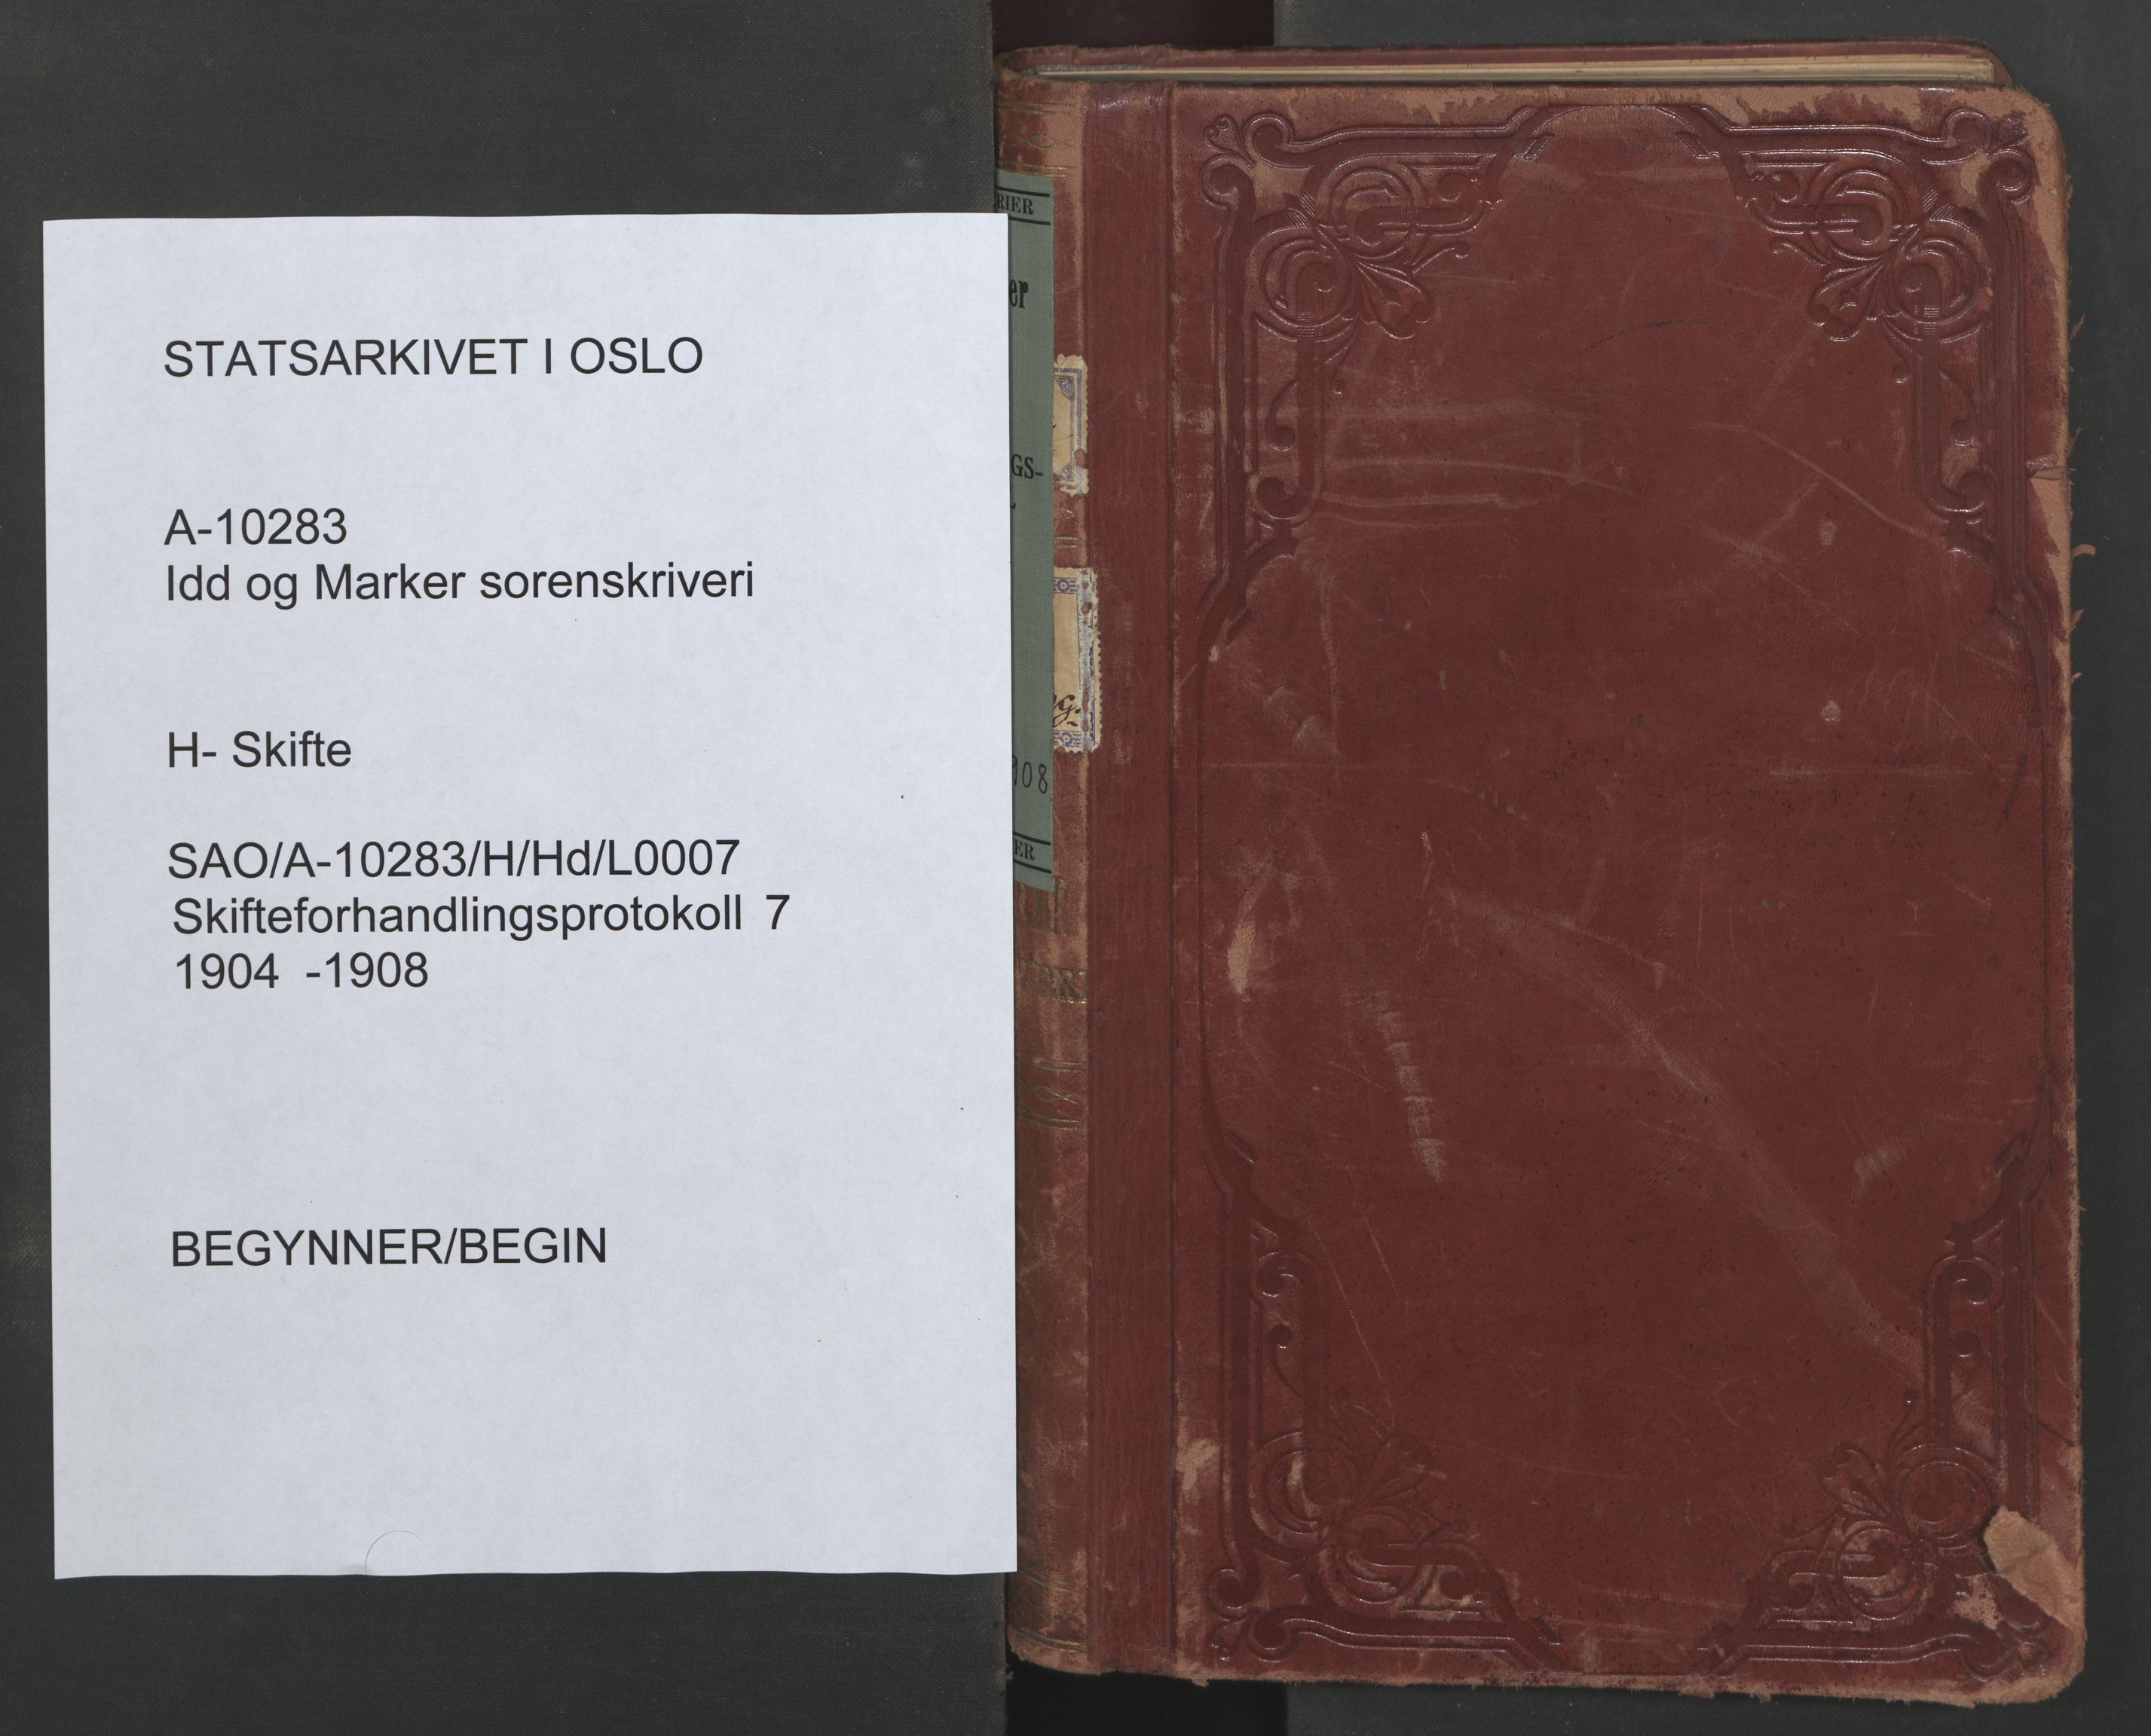 Idd og Marker sorenskriveri, SAO/A-10283/H/Hd/L0007: Skifteforhandlingsprotokoll, 1904-1908